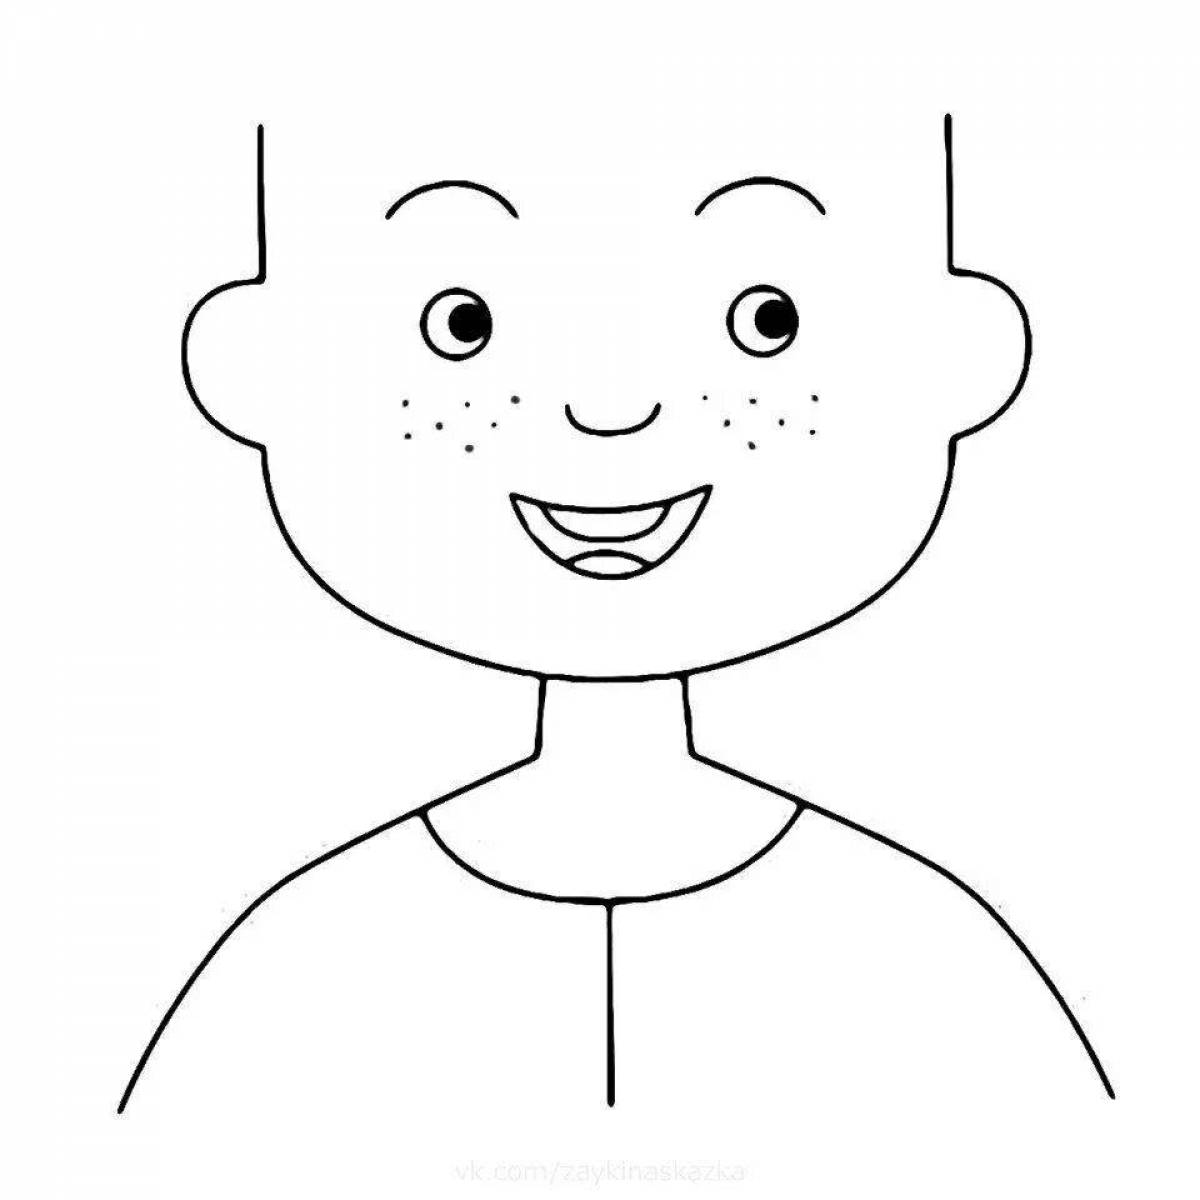 Human face coloring book